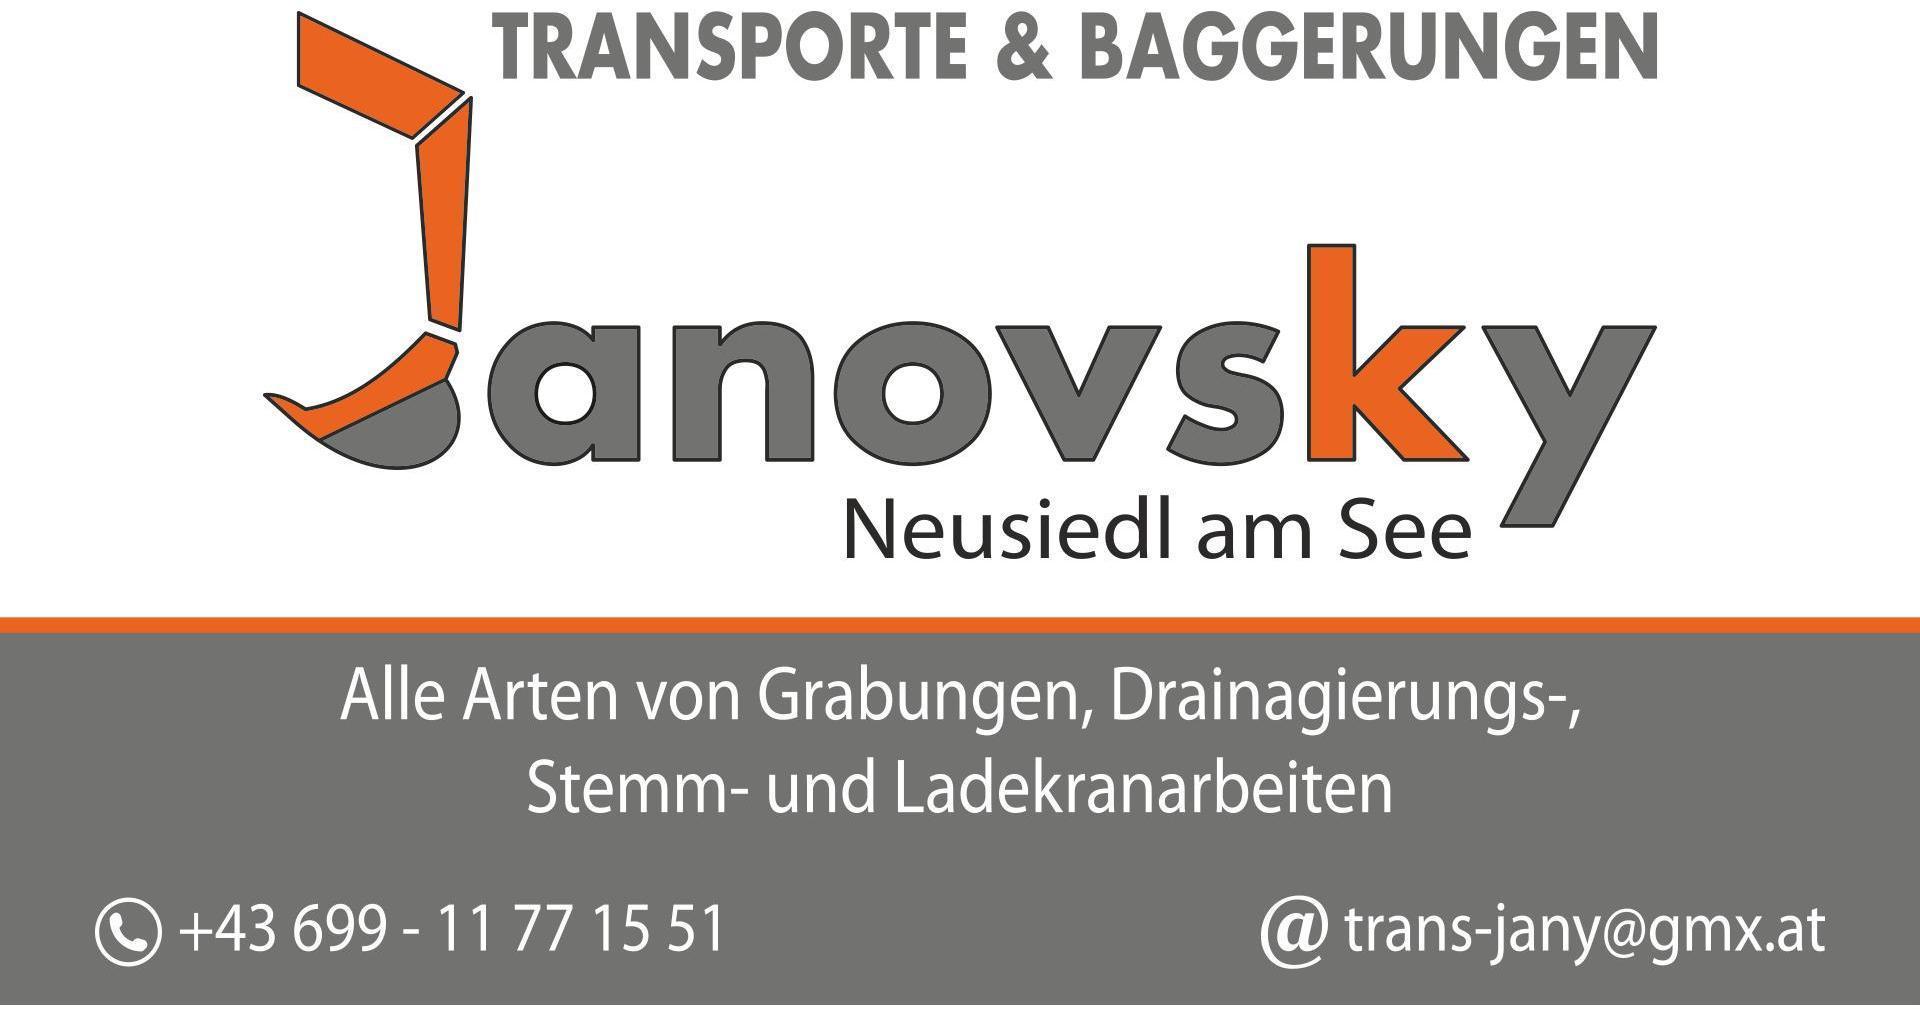 Logo Janovsky Kurt - Transporte & Baggerungen